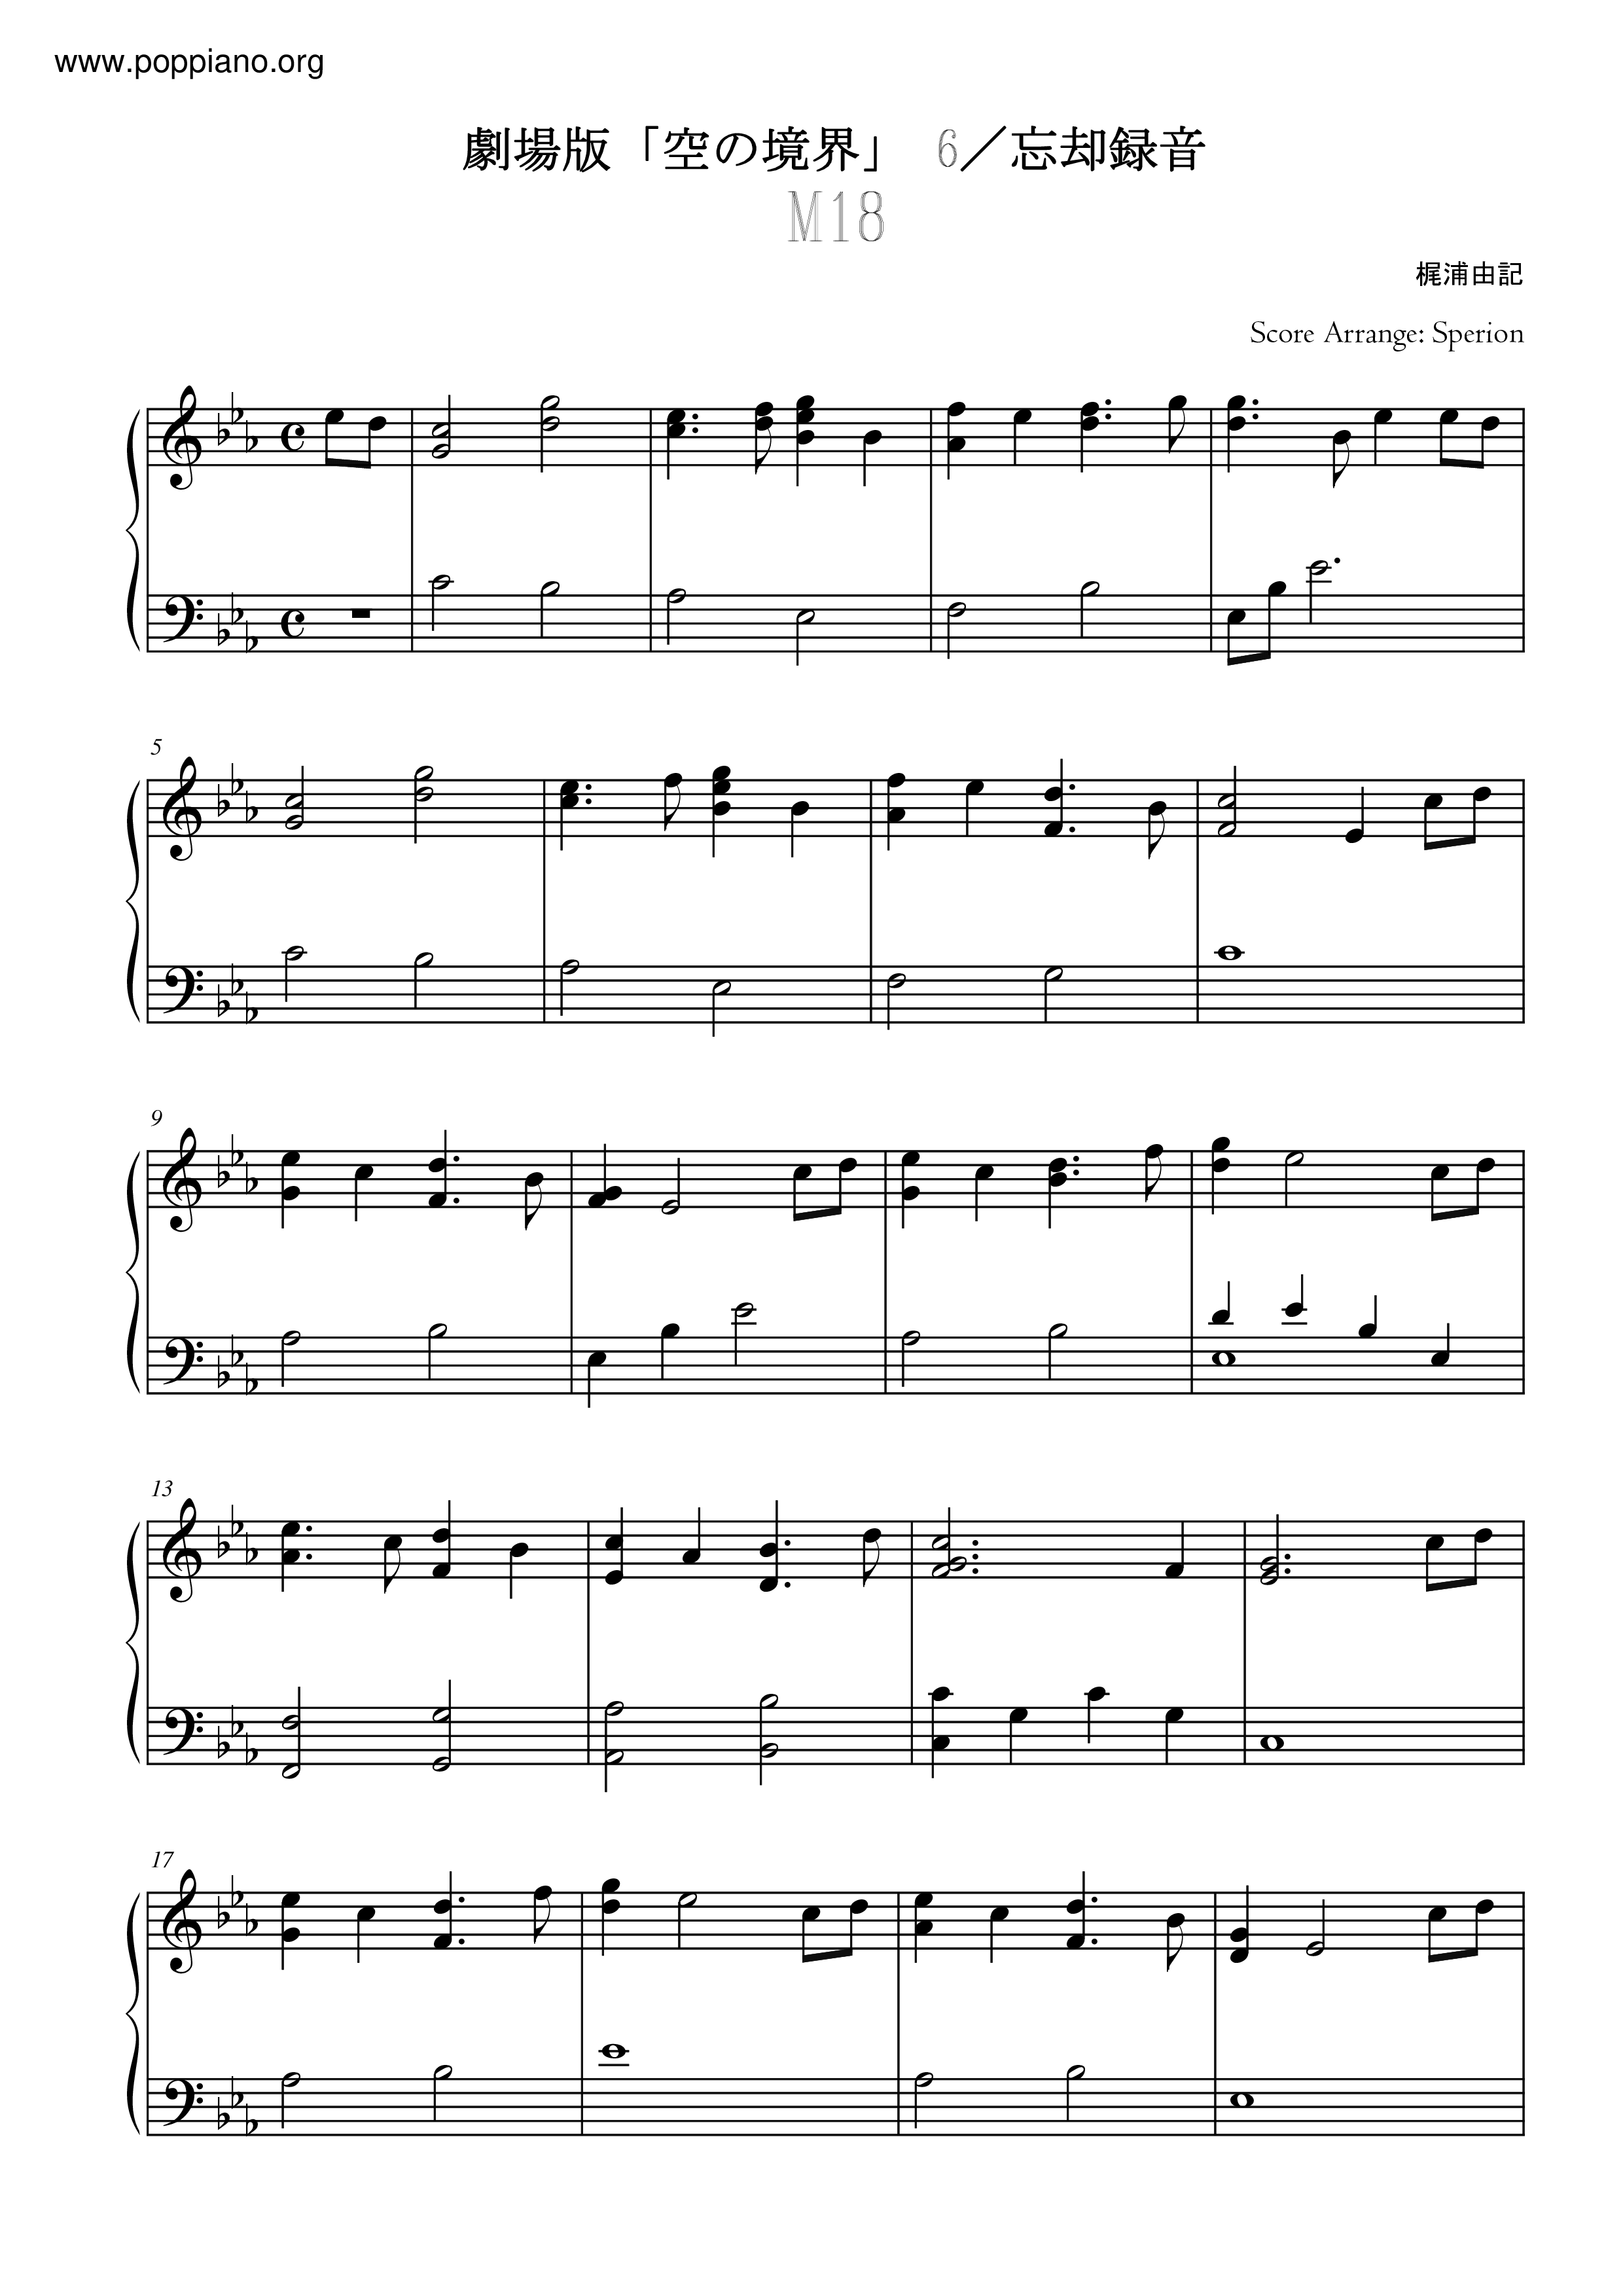 6 忘却録音 Fairy Tale M18all Versions Sheet Music Piano Score Free Pdf Download Hk Pop Piano Academy